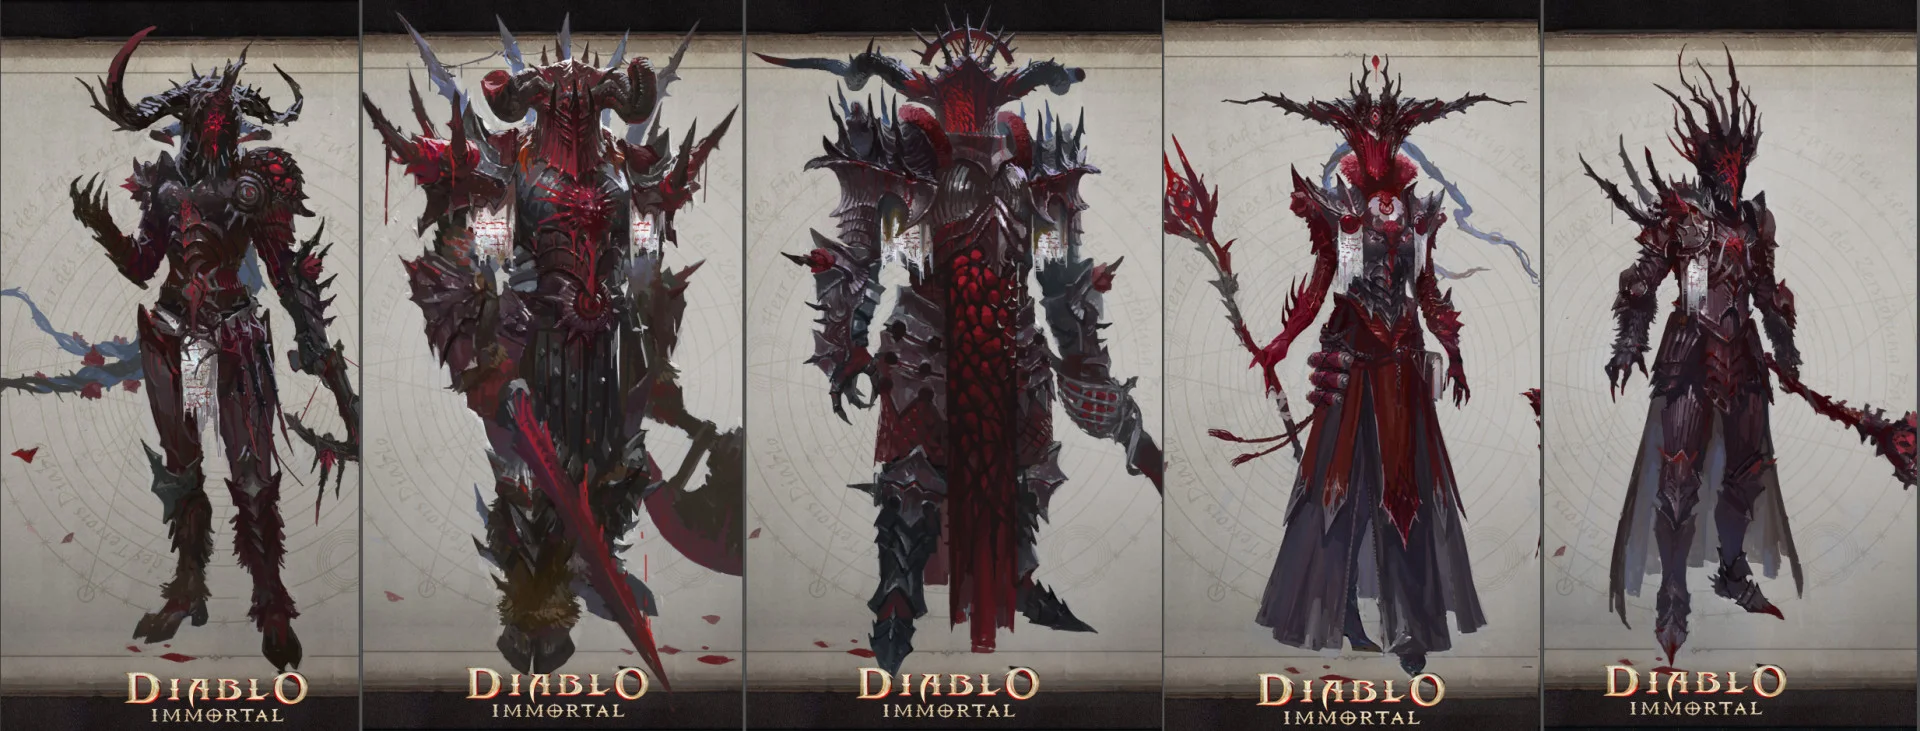 Предварительная регистрация Diablo Immortal стартовала на iOS - фото 1